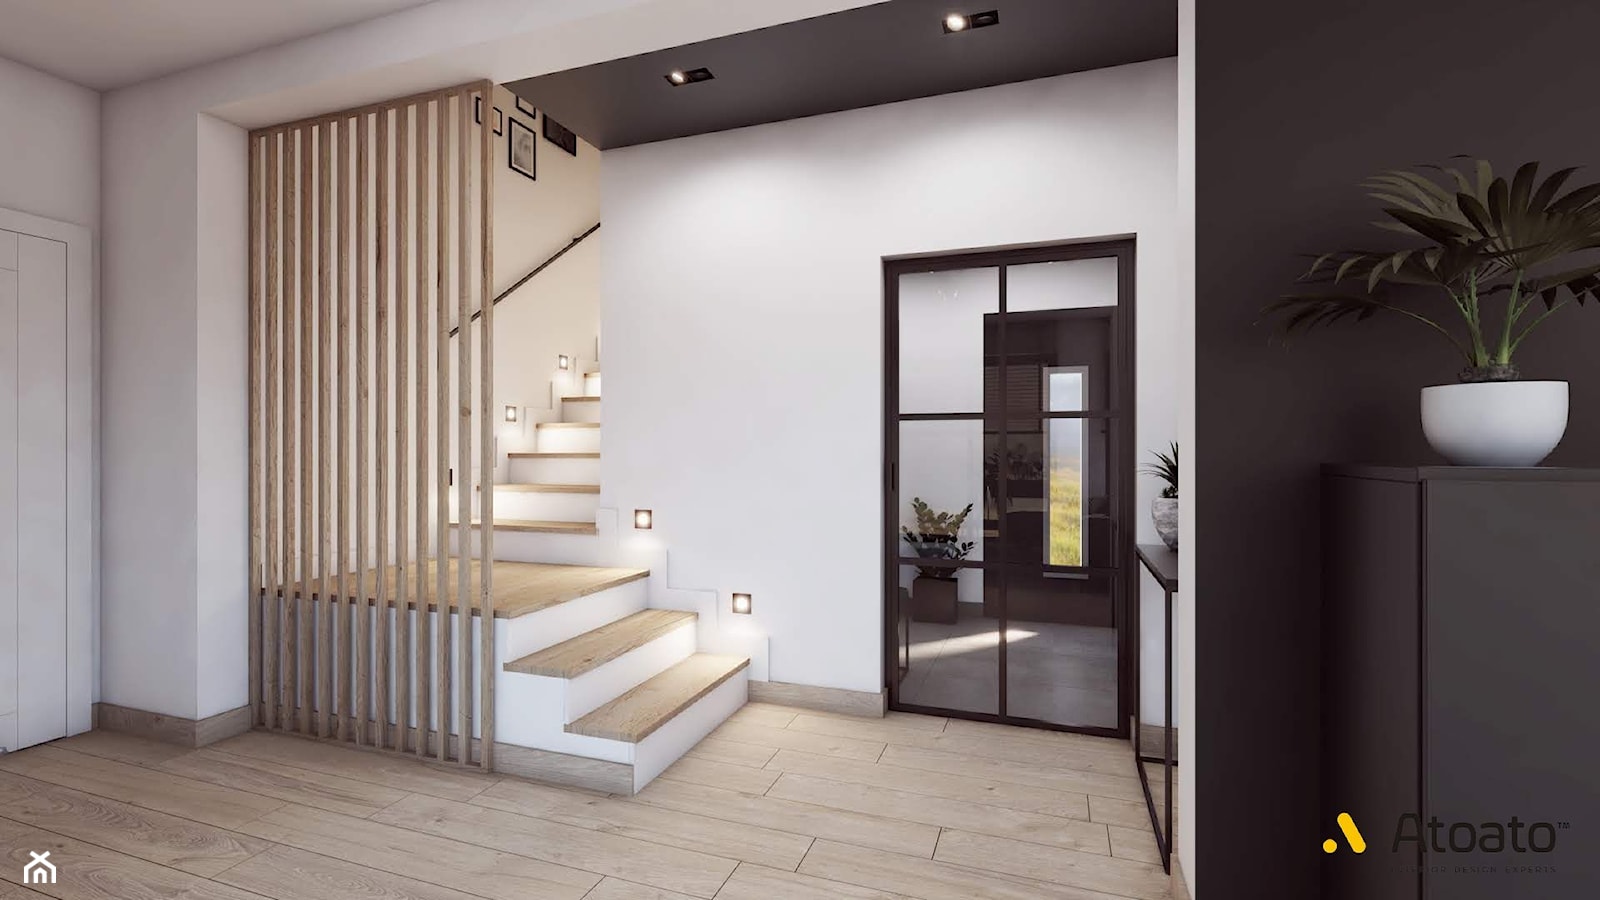 schody z ażurową ścianką - zdjęcie od Studio Projektowe Atoato - Homebook